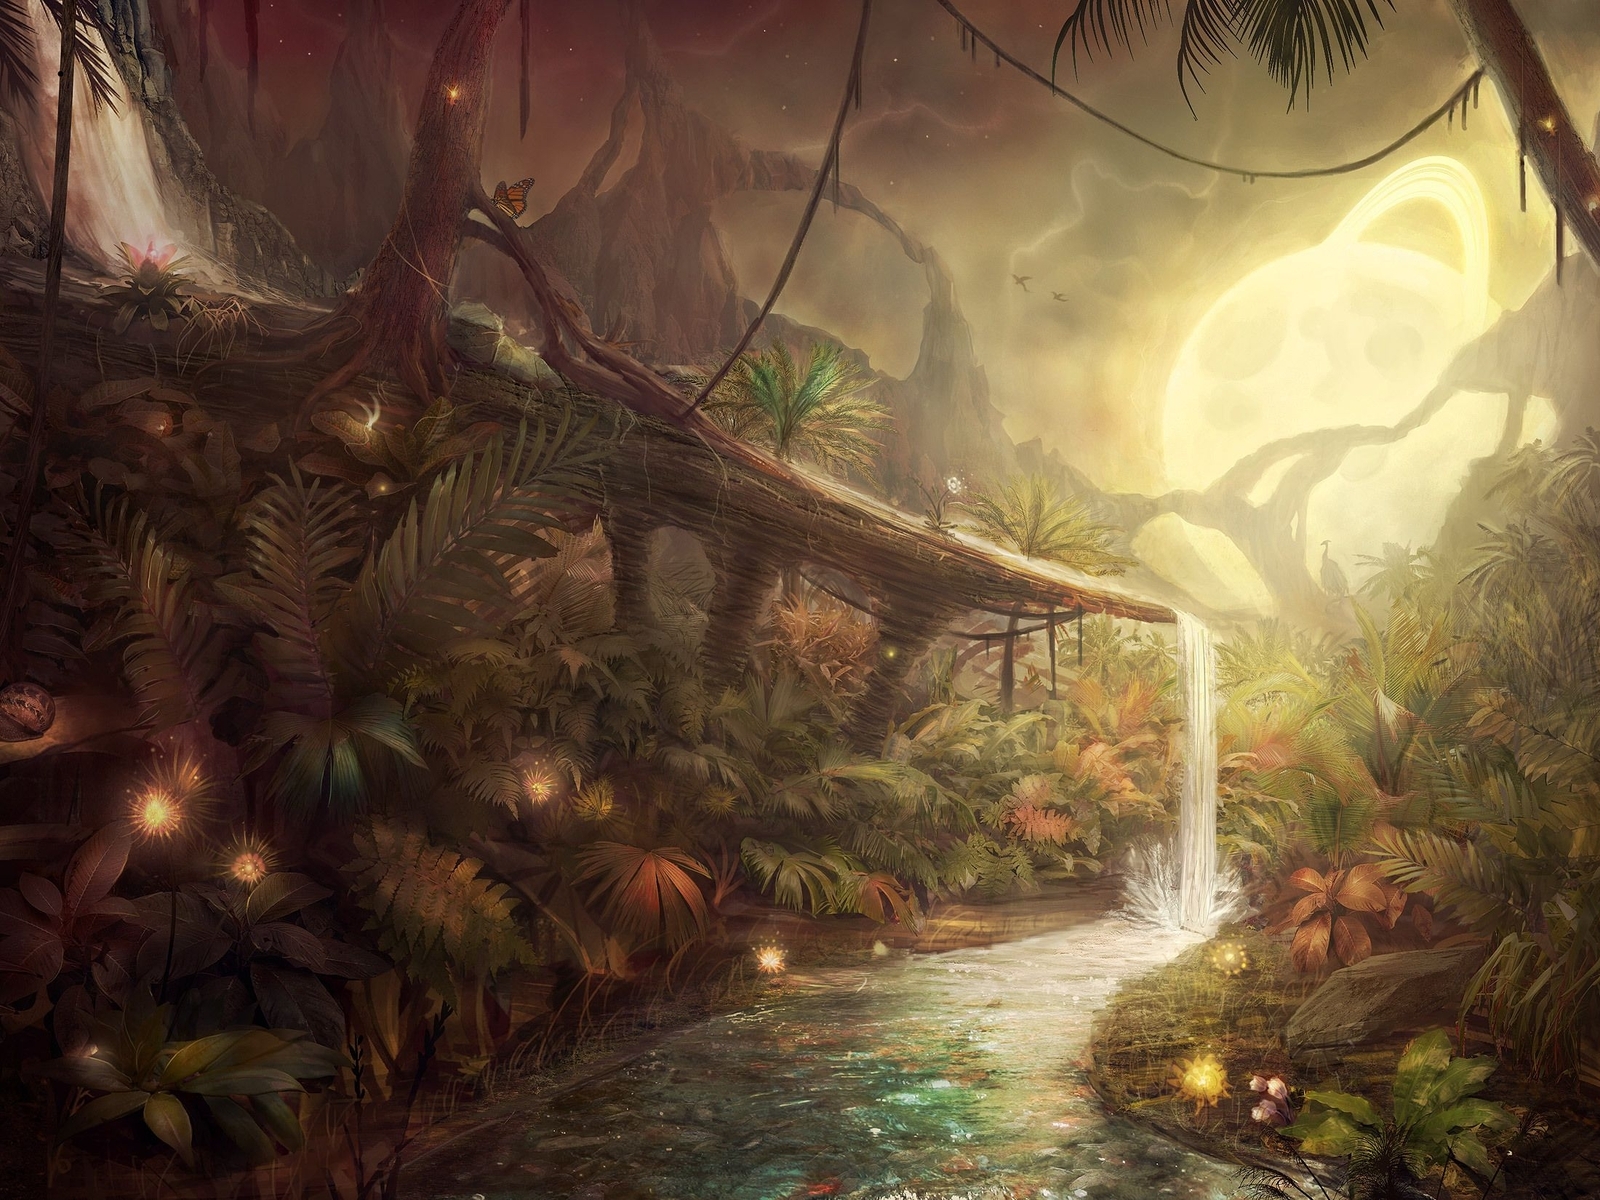 Картинка: Арт, Аватар, Пандора, водопад, ручей, светящийся шар, деревья, джунгли, насекомые, листья